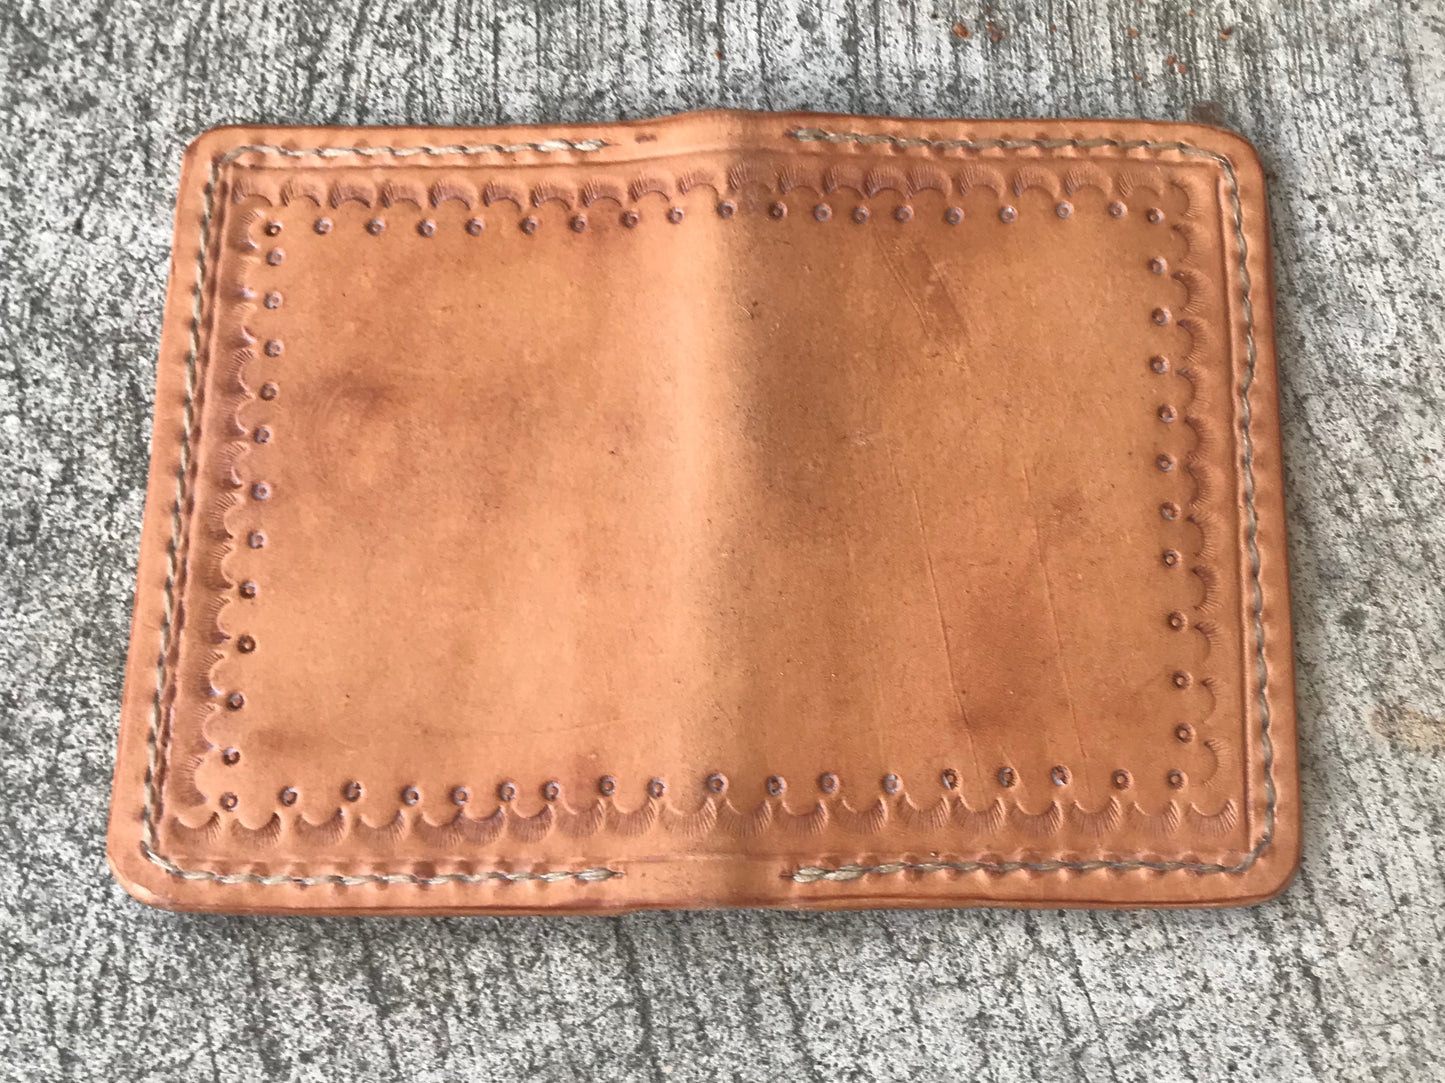 Los Primos Leather Vertical Wallet